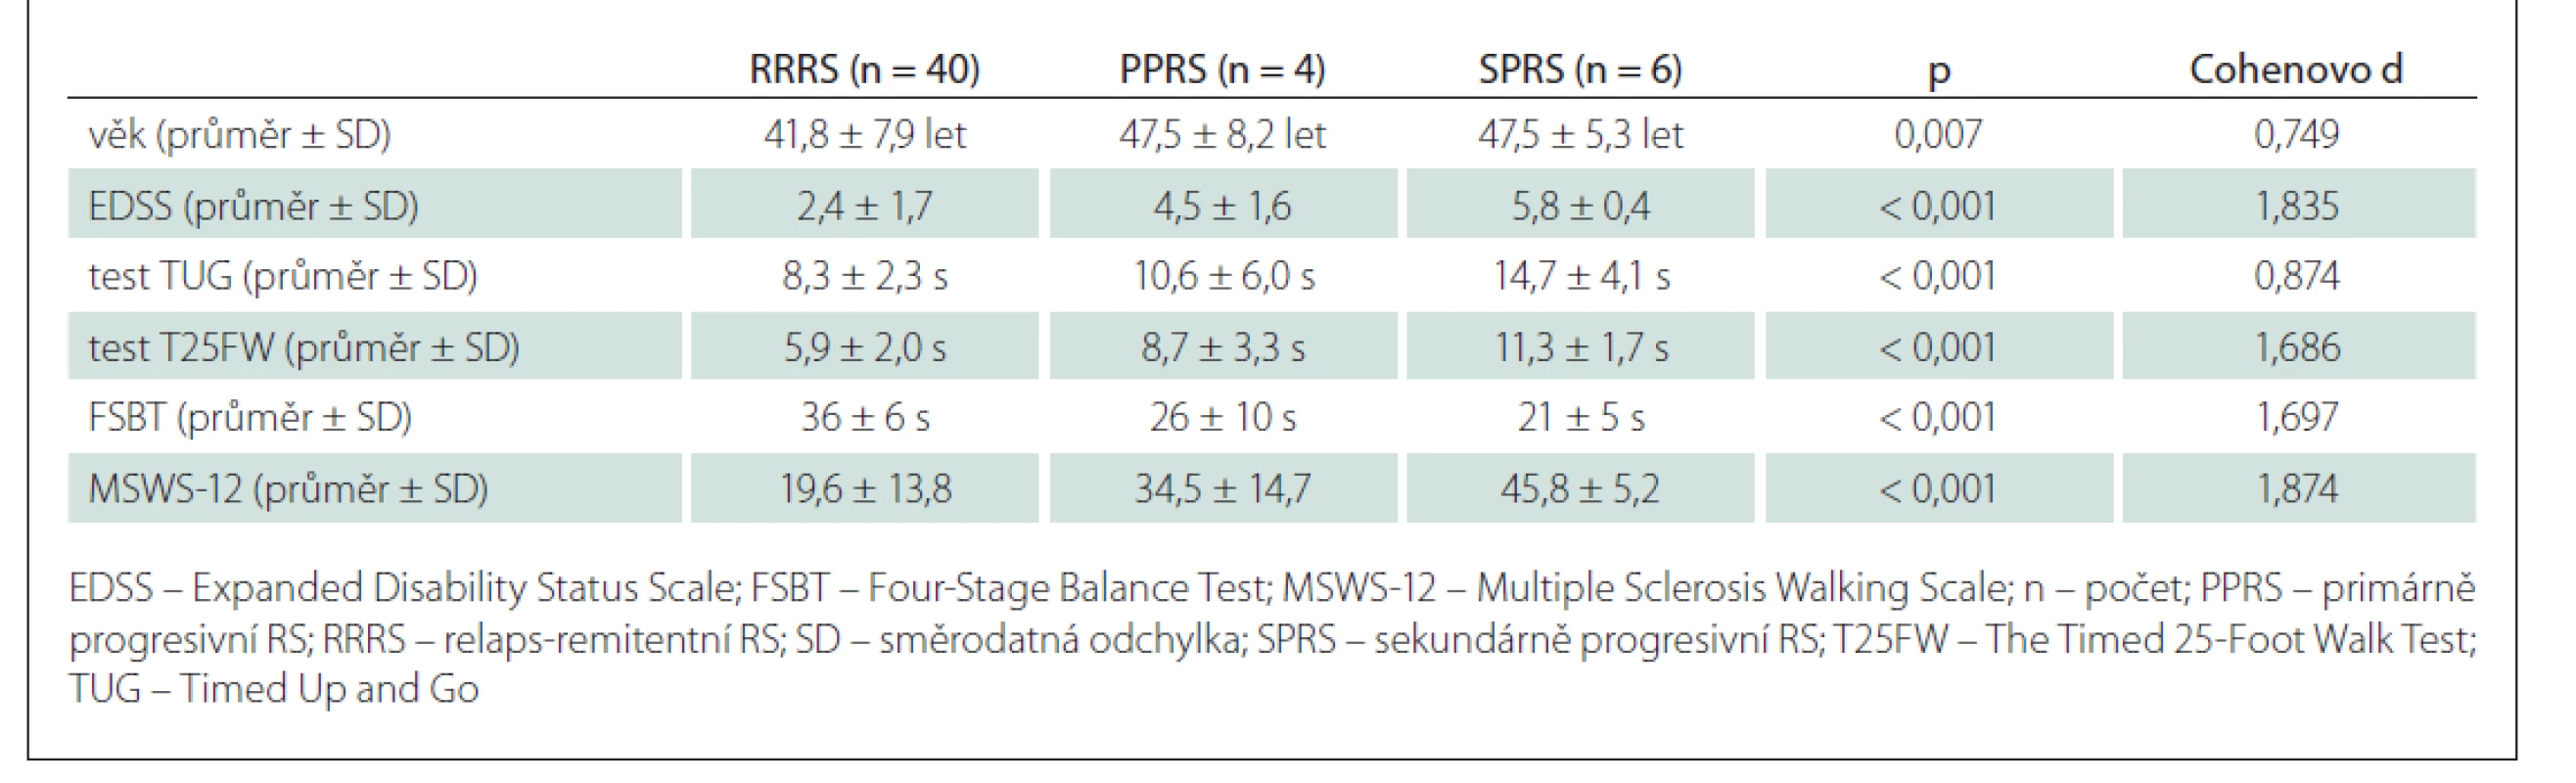 Porovnání hodnot pacientů s RRRS a progresivními formami roztroušené (PPRS a SPRS).